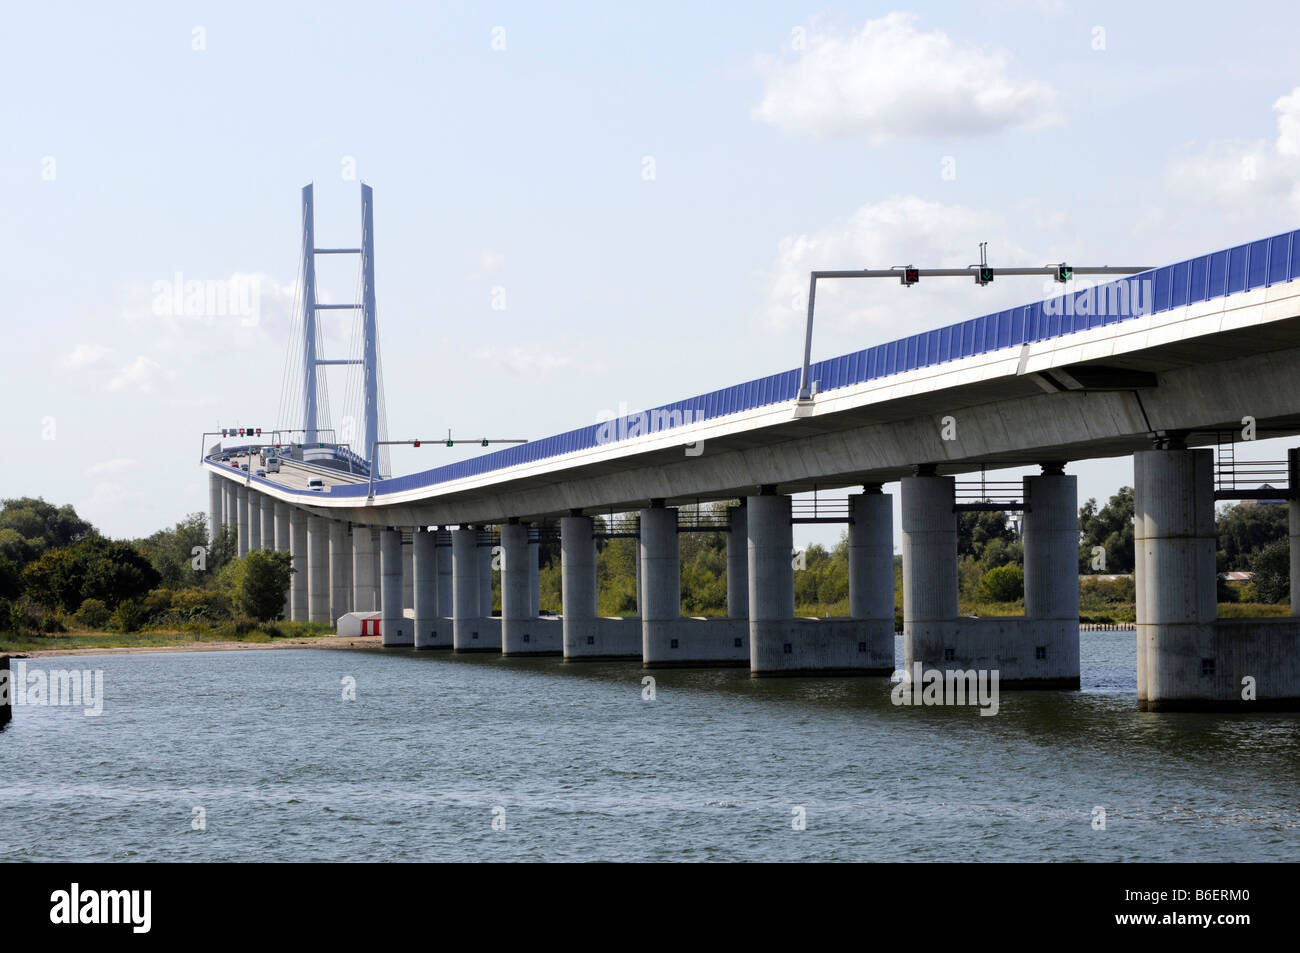 Puente Ruegenbruecke, longitud total 2831m, fue inaugurado en octubre de 2007, Stralsund, Mar Báltico, Mecklemburgo-Pomerania Occidental, Alemania, E Foto de stock